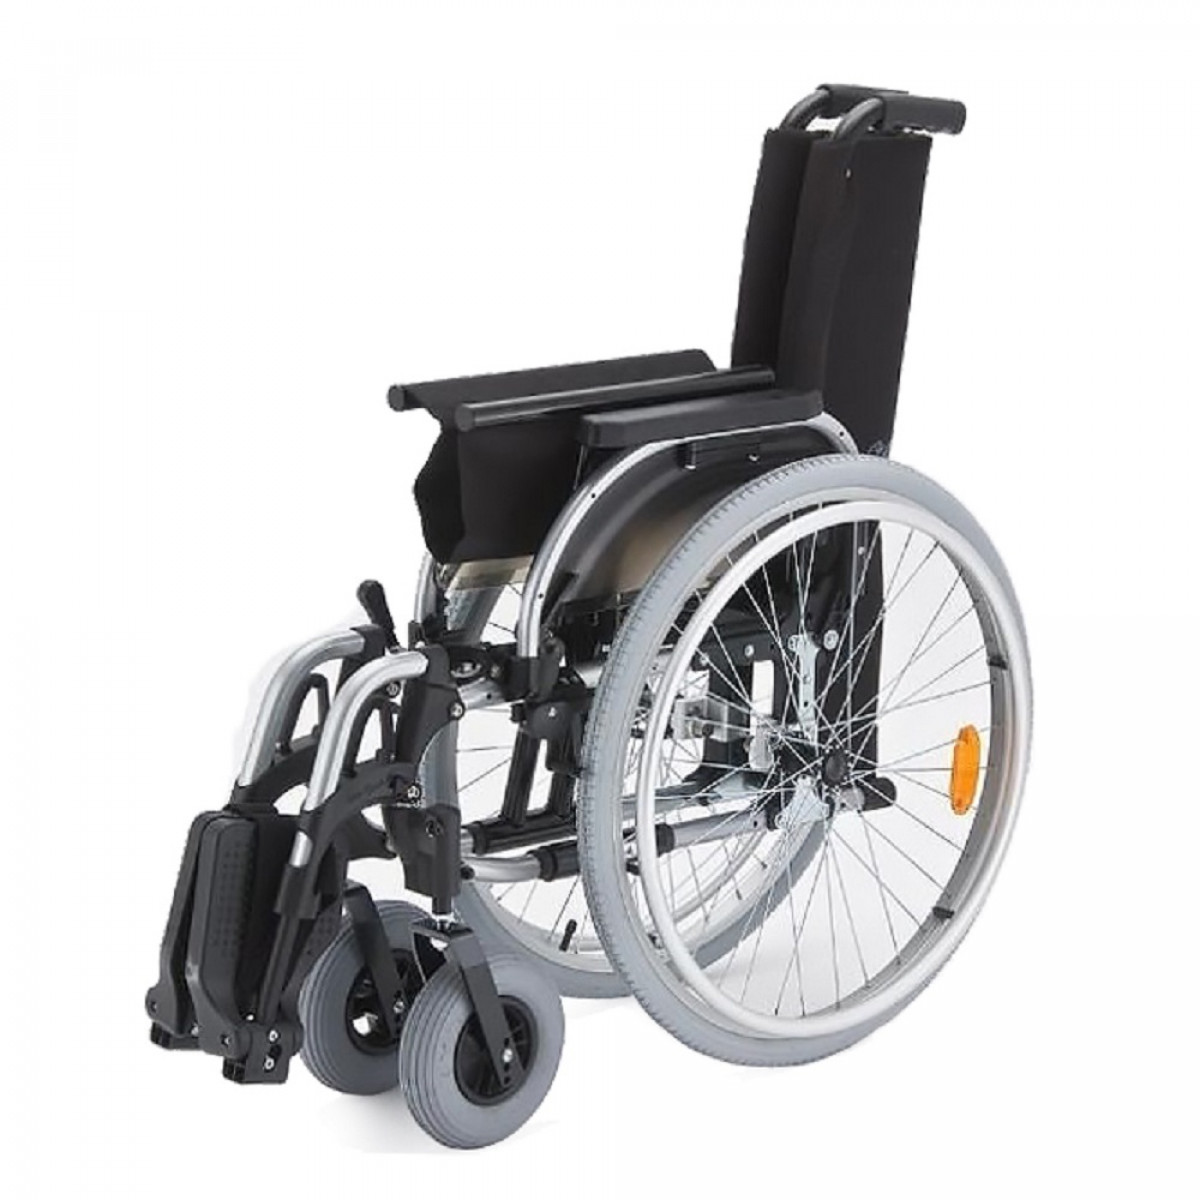 Коляски инвалидные прогулочные цена. Кресло-коляска Отто БОКК старт. Отто БОКК инвалидные коляски. Инвалидное кресло-коляска Отто БОКК старт. Кресло коляска Ottobock старт ШС 45.5.